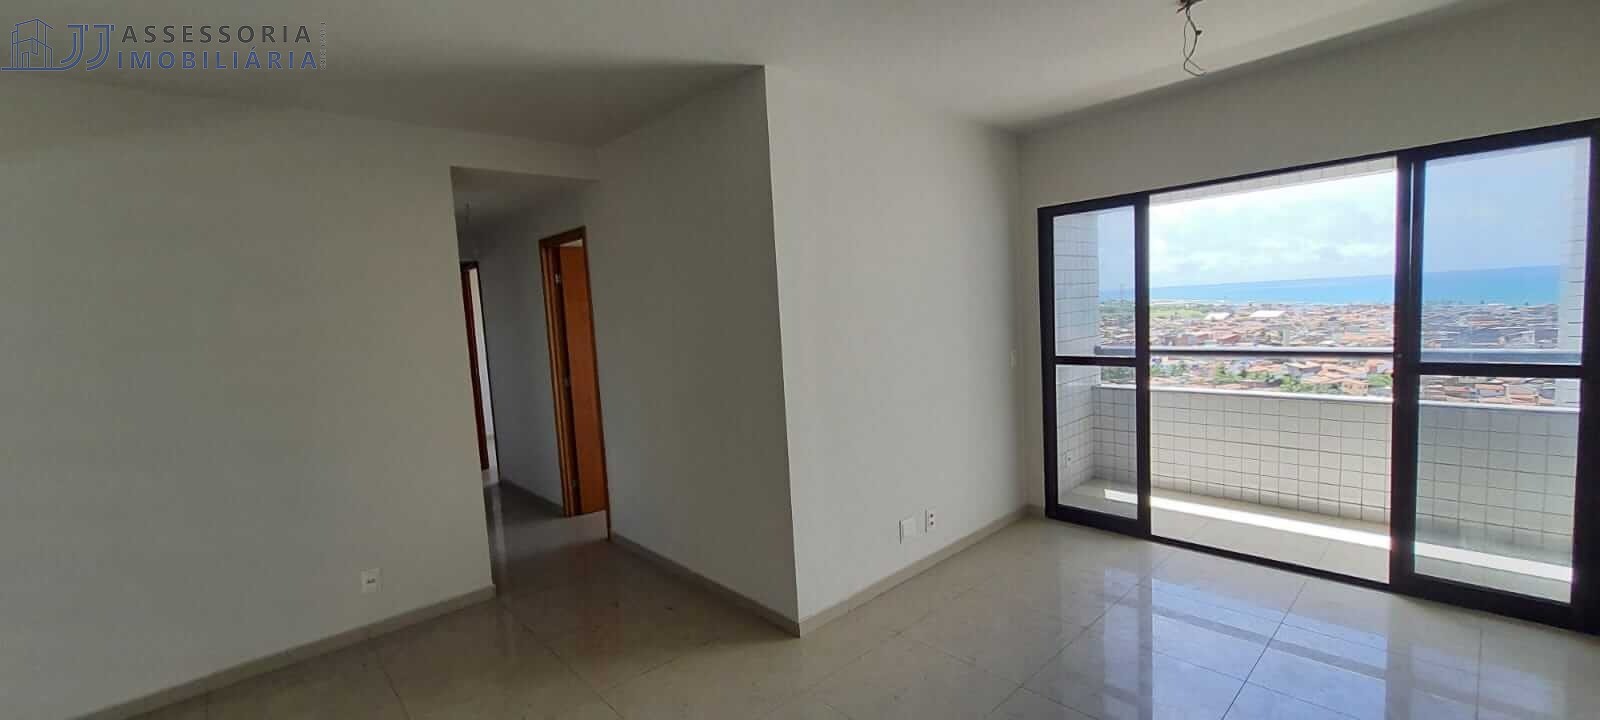 Residencial Therraza Petrópolis - Venda de apartamento em Petrópolis, Natal,  com 3 quartos sendo um suíte mais dois semi suítes